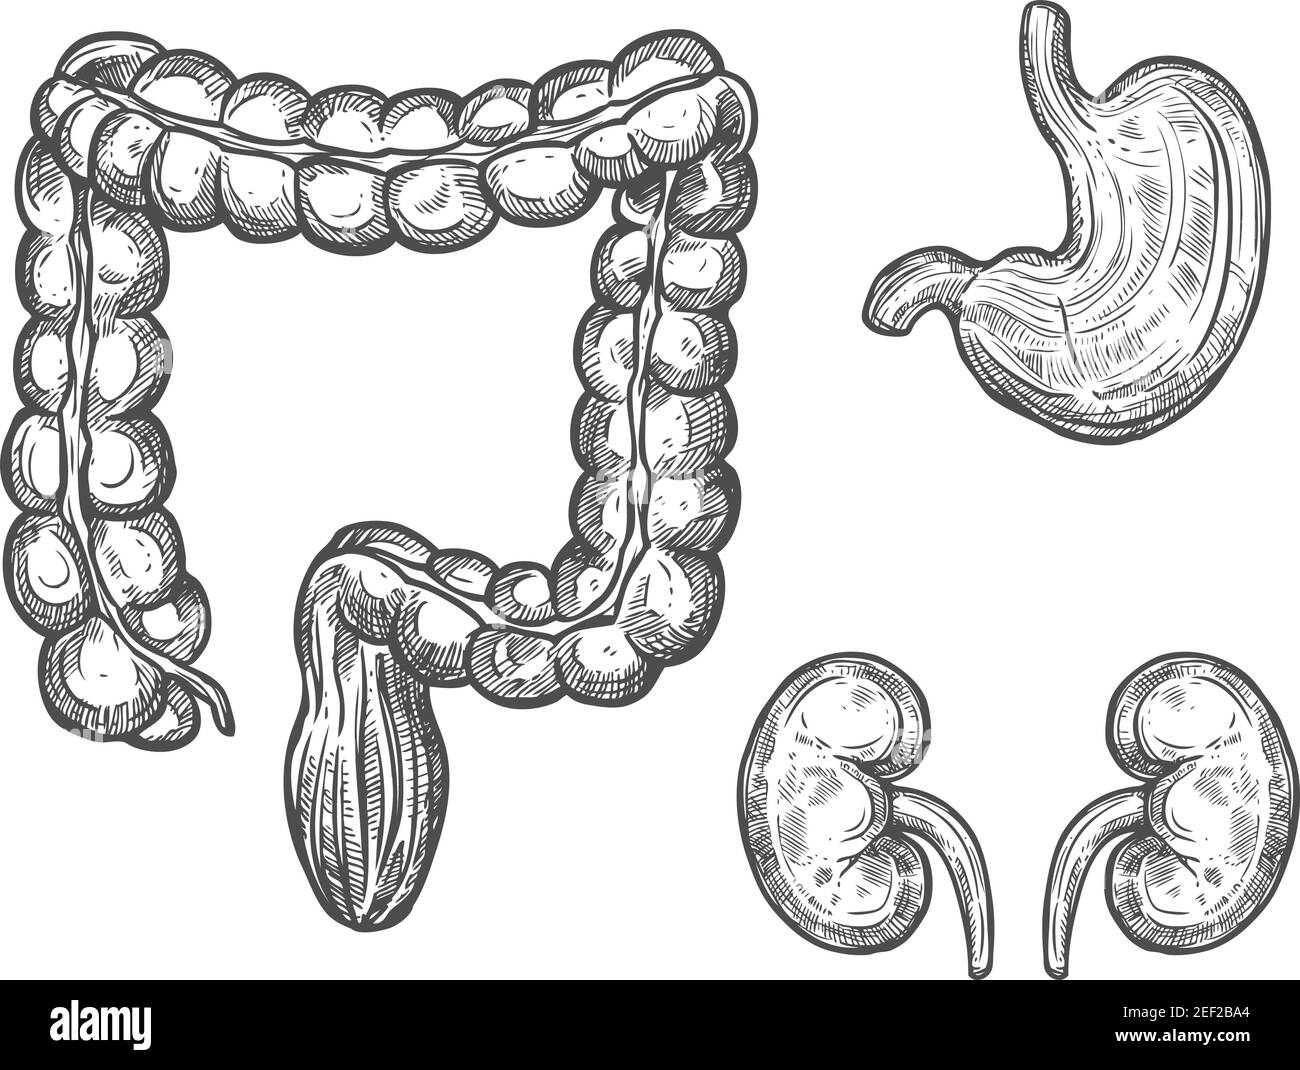 Schizzo dell'organo umano dell'anatomia interna. Reni, stomaco e intestino crasso icona isolata del sistema del corpo umano per la medicina, la sanità e il fisiolog Illustrazione Vettoriale